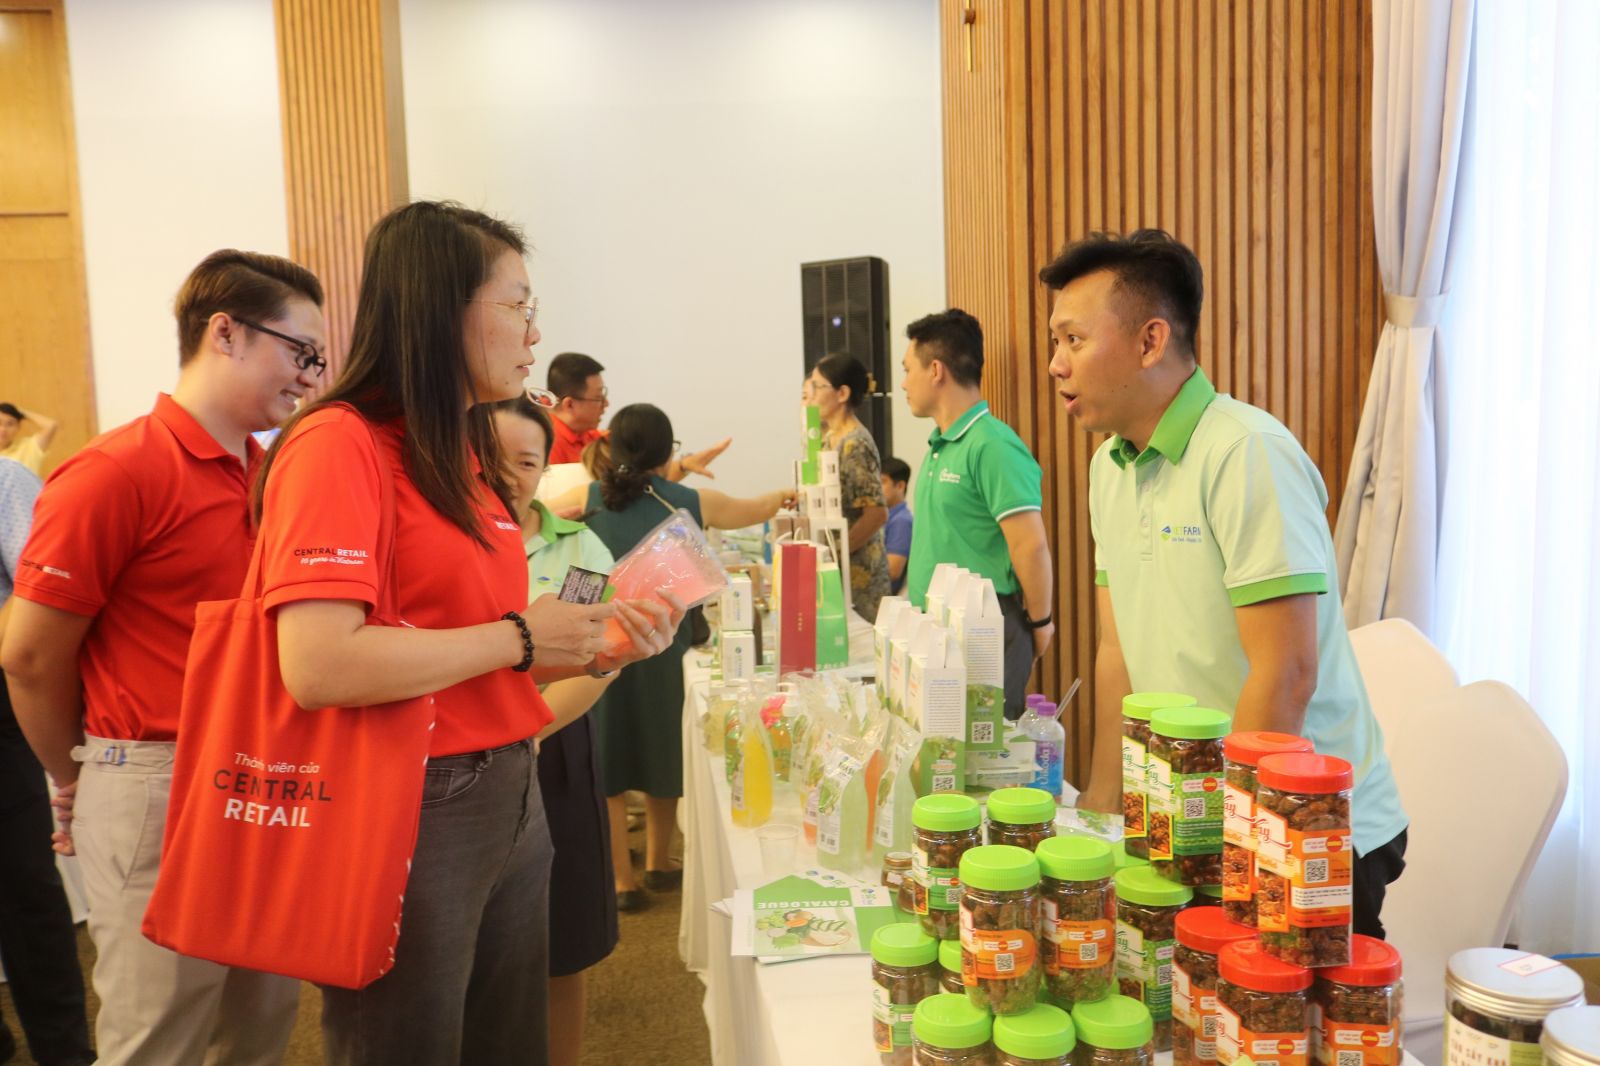 2 Chủ thể OCOP giới thiệu sản phẩm OCOP mủ trôm Ninh Thuận, kỳ vọng sớm được đưa hàng vào tiêu thụ tại hệ thống siêu thị GO!, Big C của Central Retail.jpg